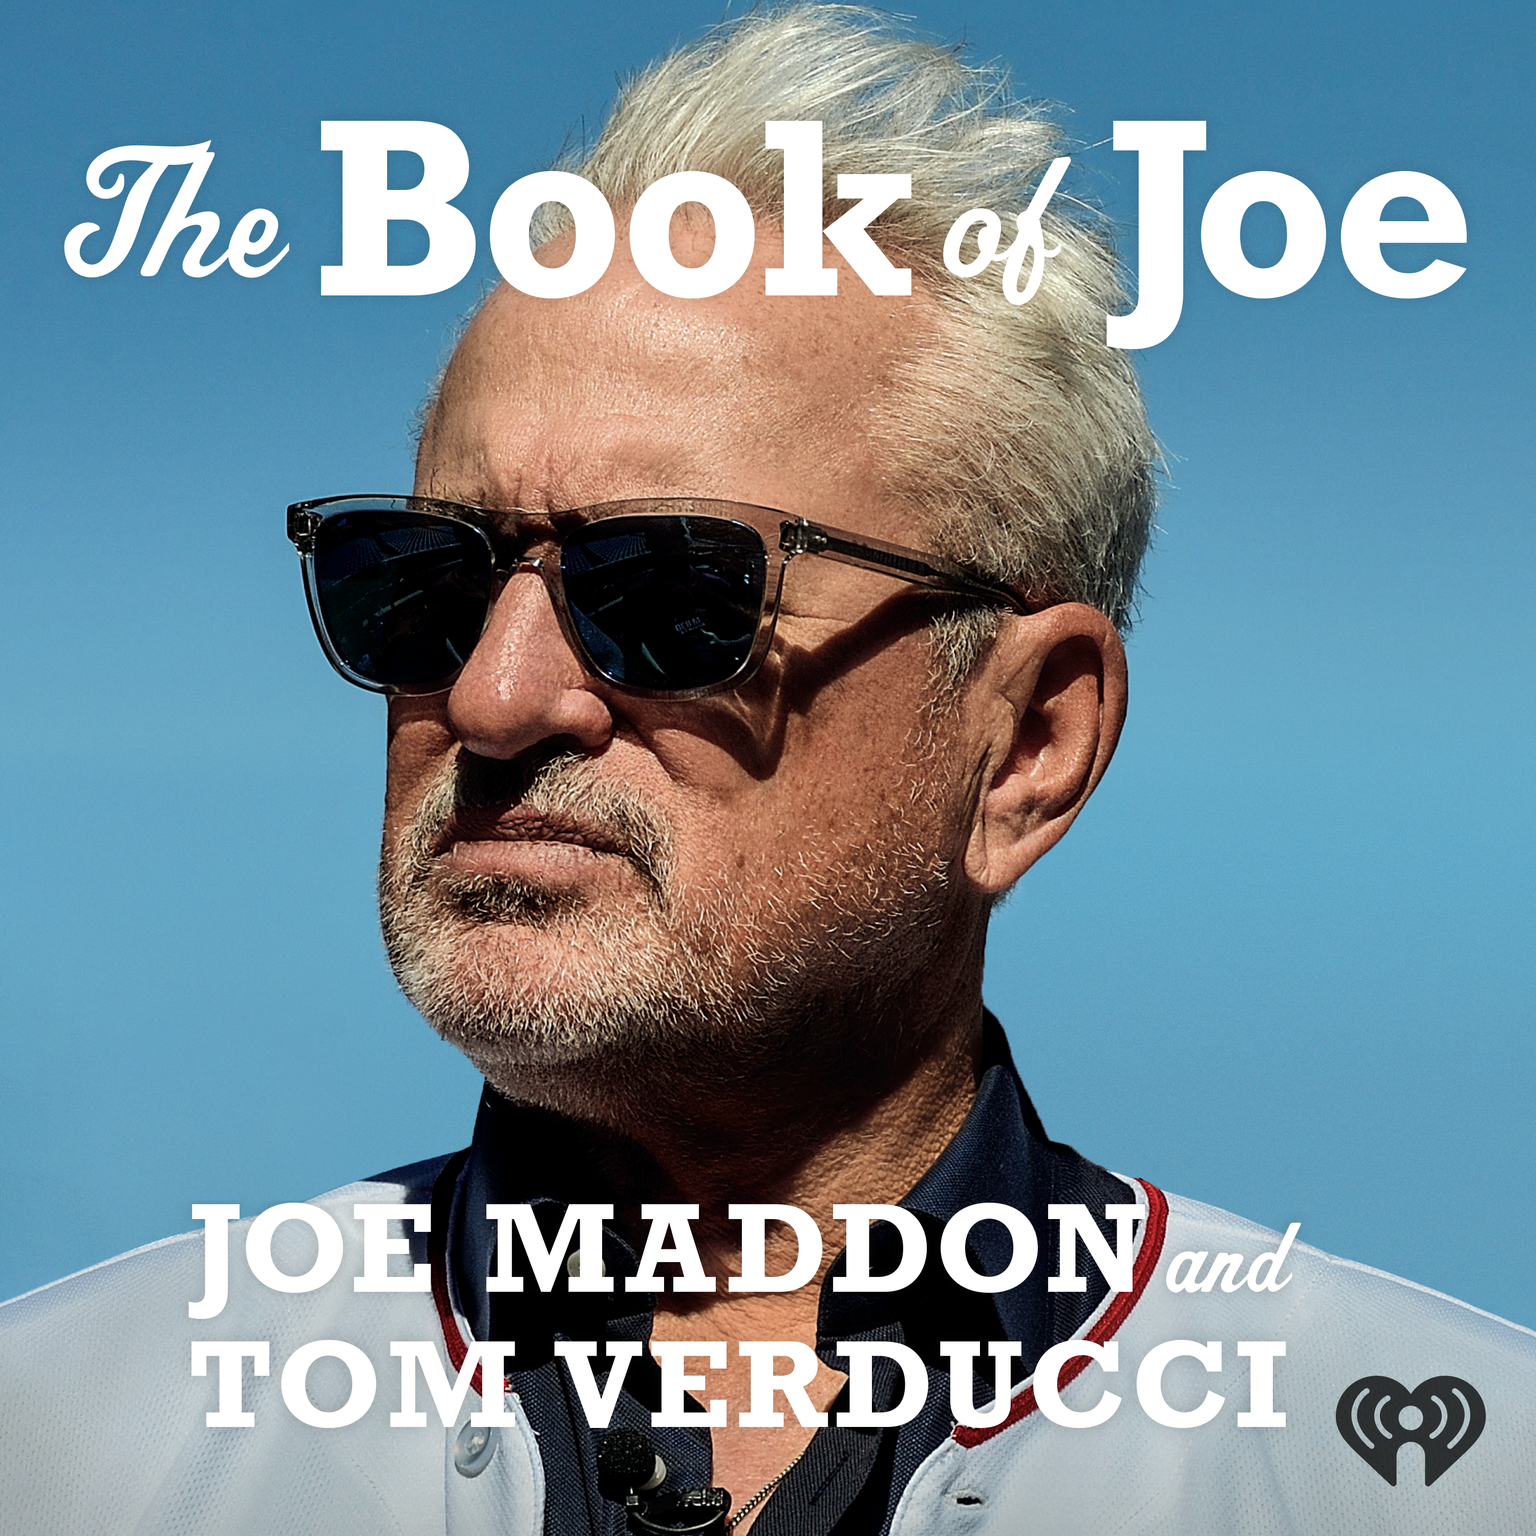 The Book of Joe: Brett Lederer, Fmr PGA/Golf Instructor